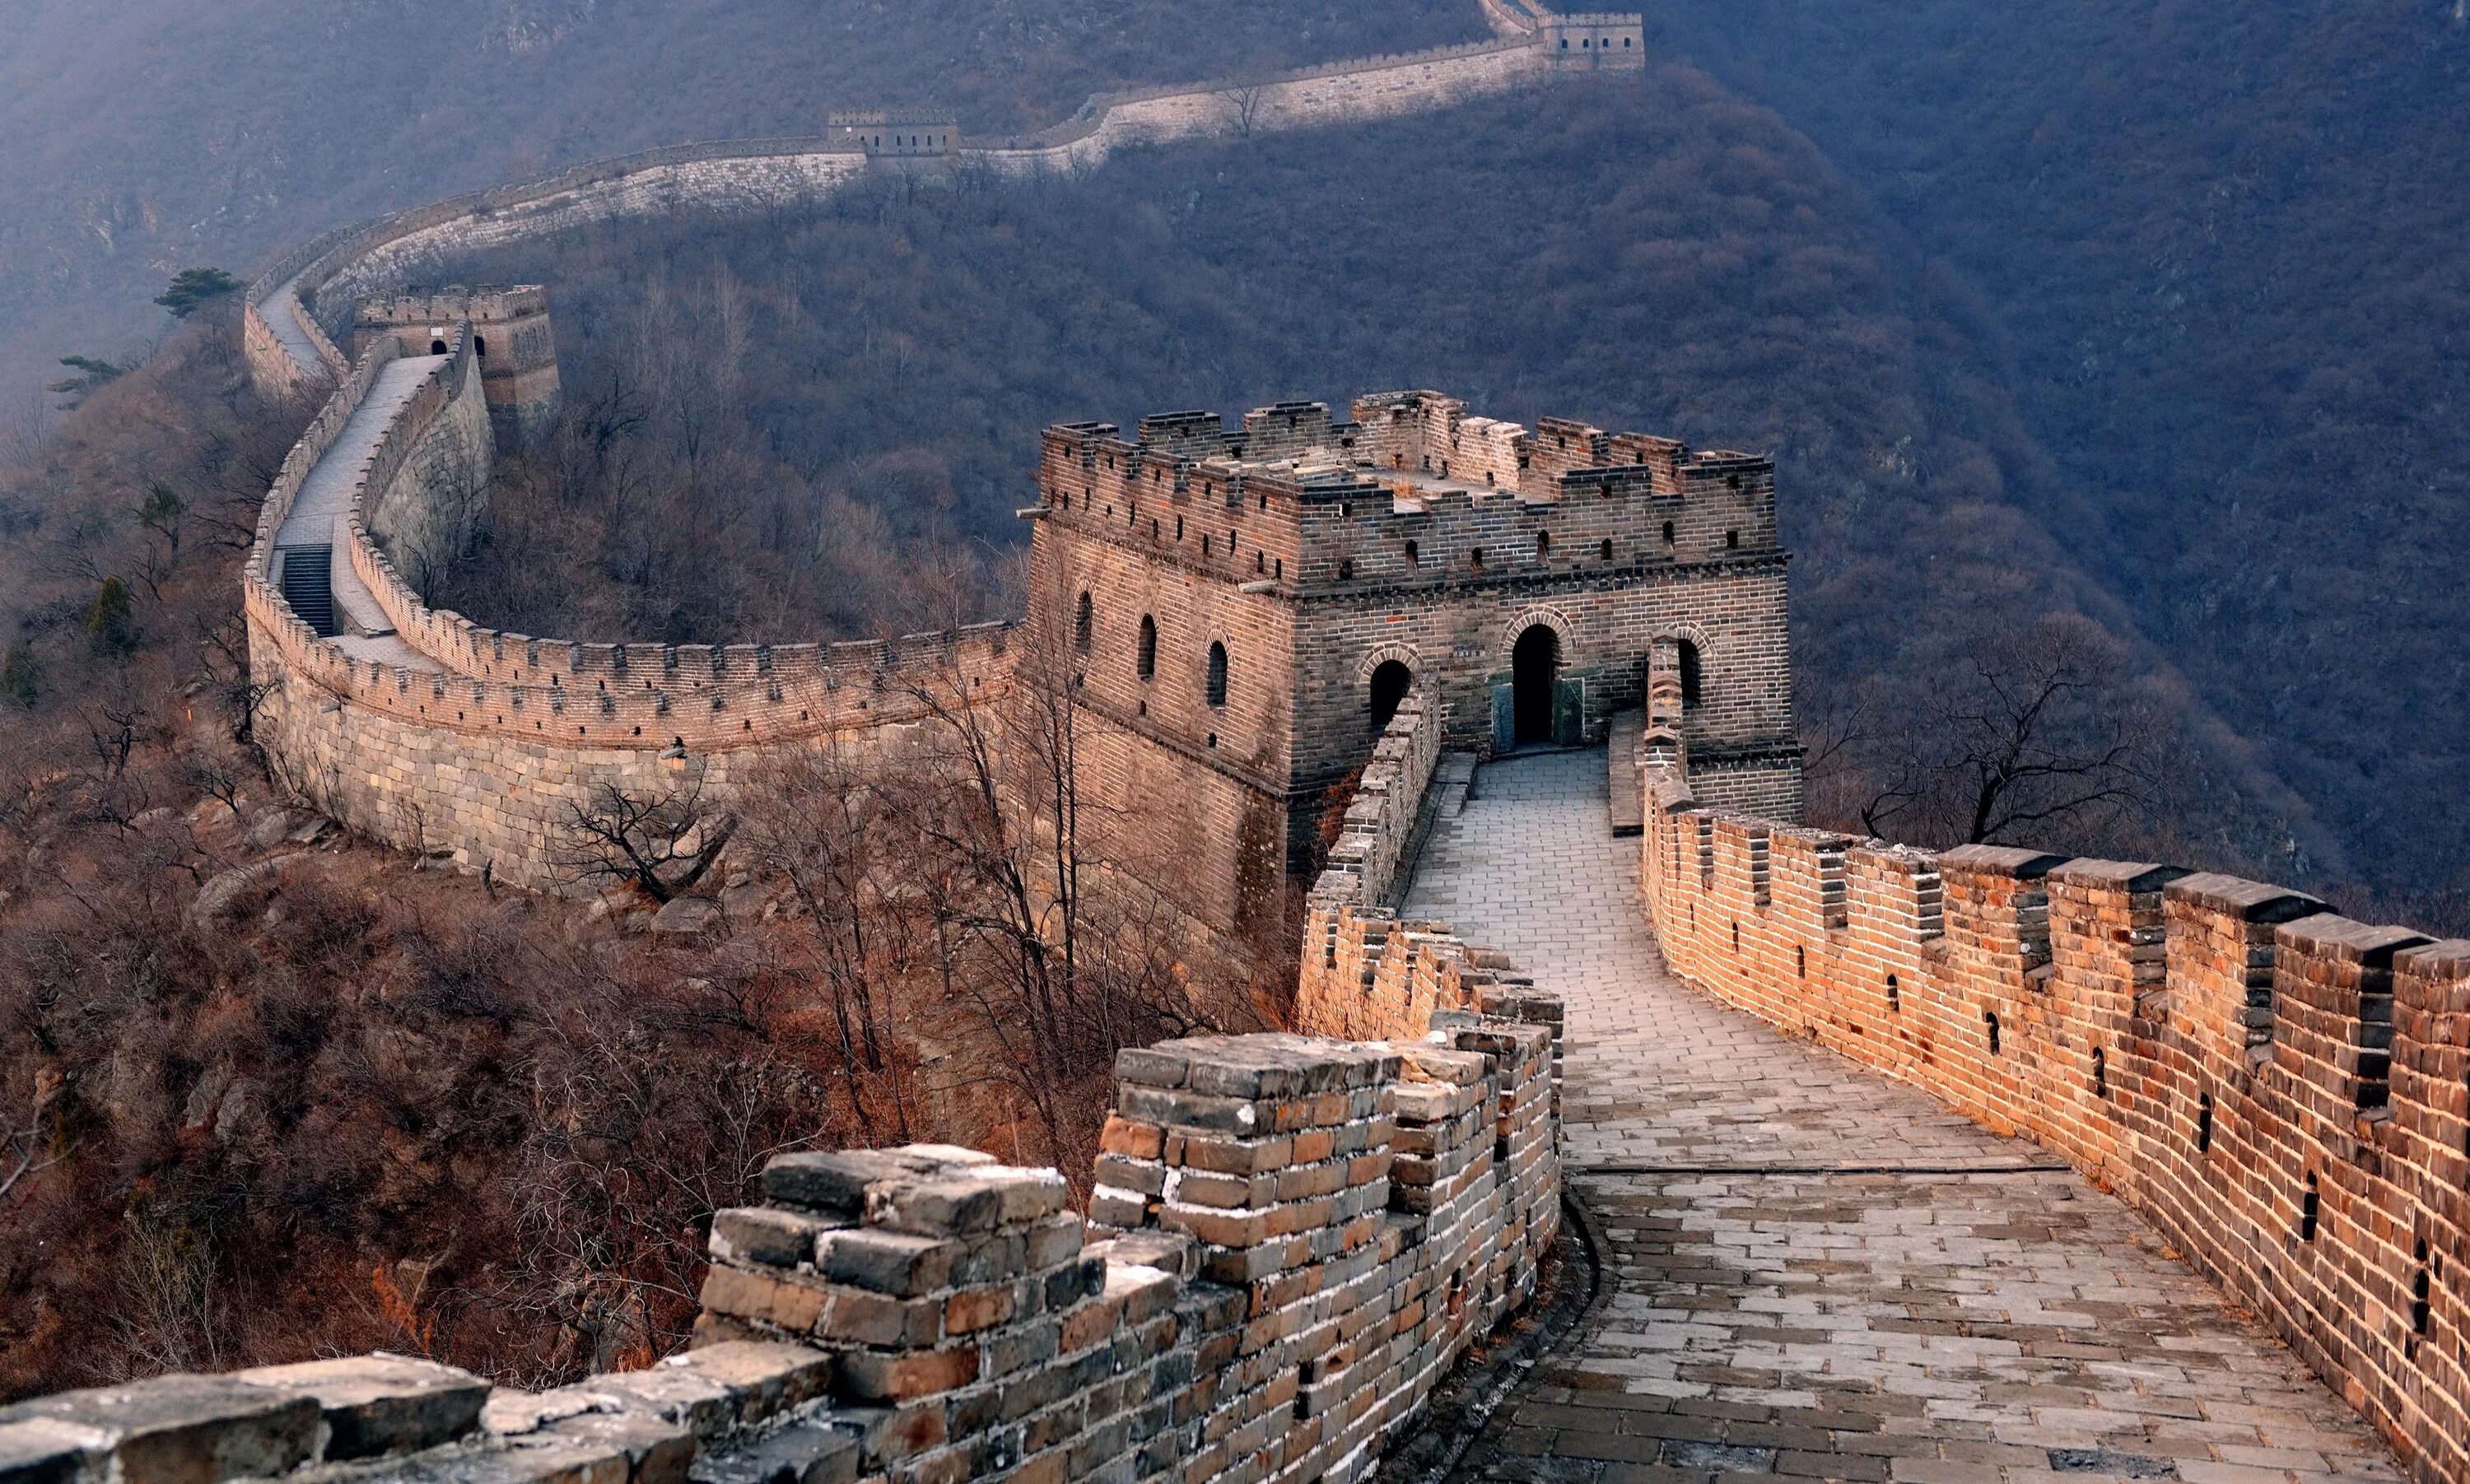 Китайская стена достопримечательность. Великая китайская стена Пекин. Великая китайская стена цинхай. Участок Великой китайской стены Мутяньюй, Пекин, Китай. Бойницы китайской стены.